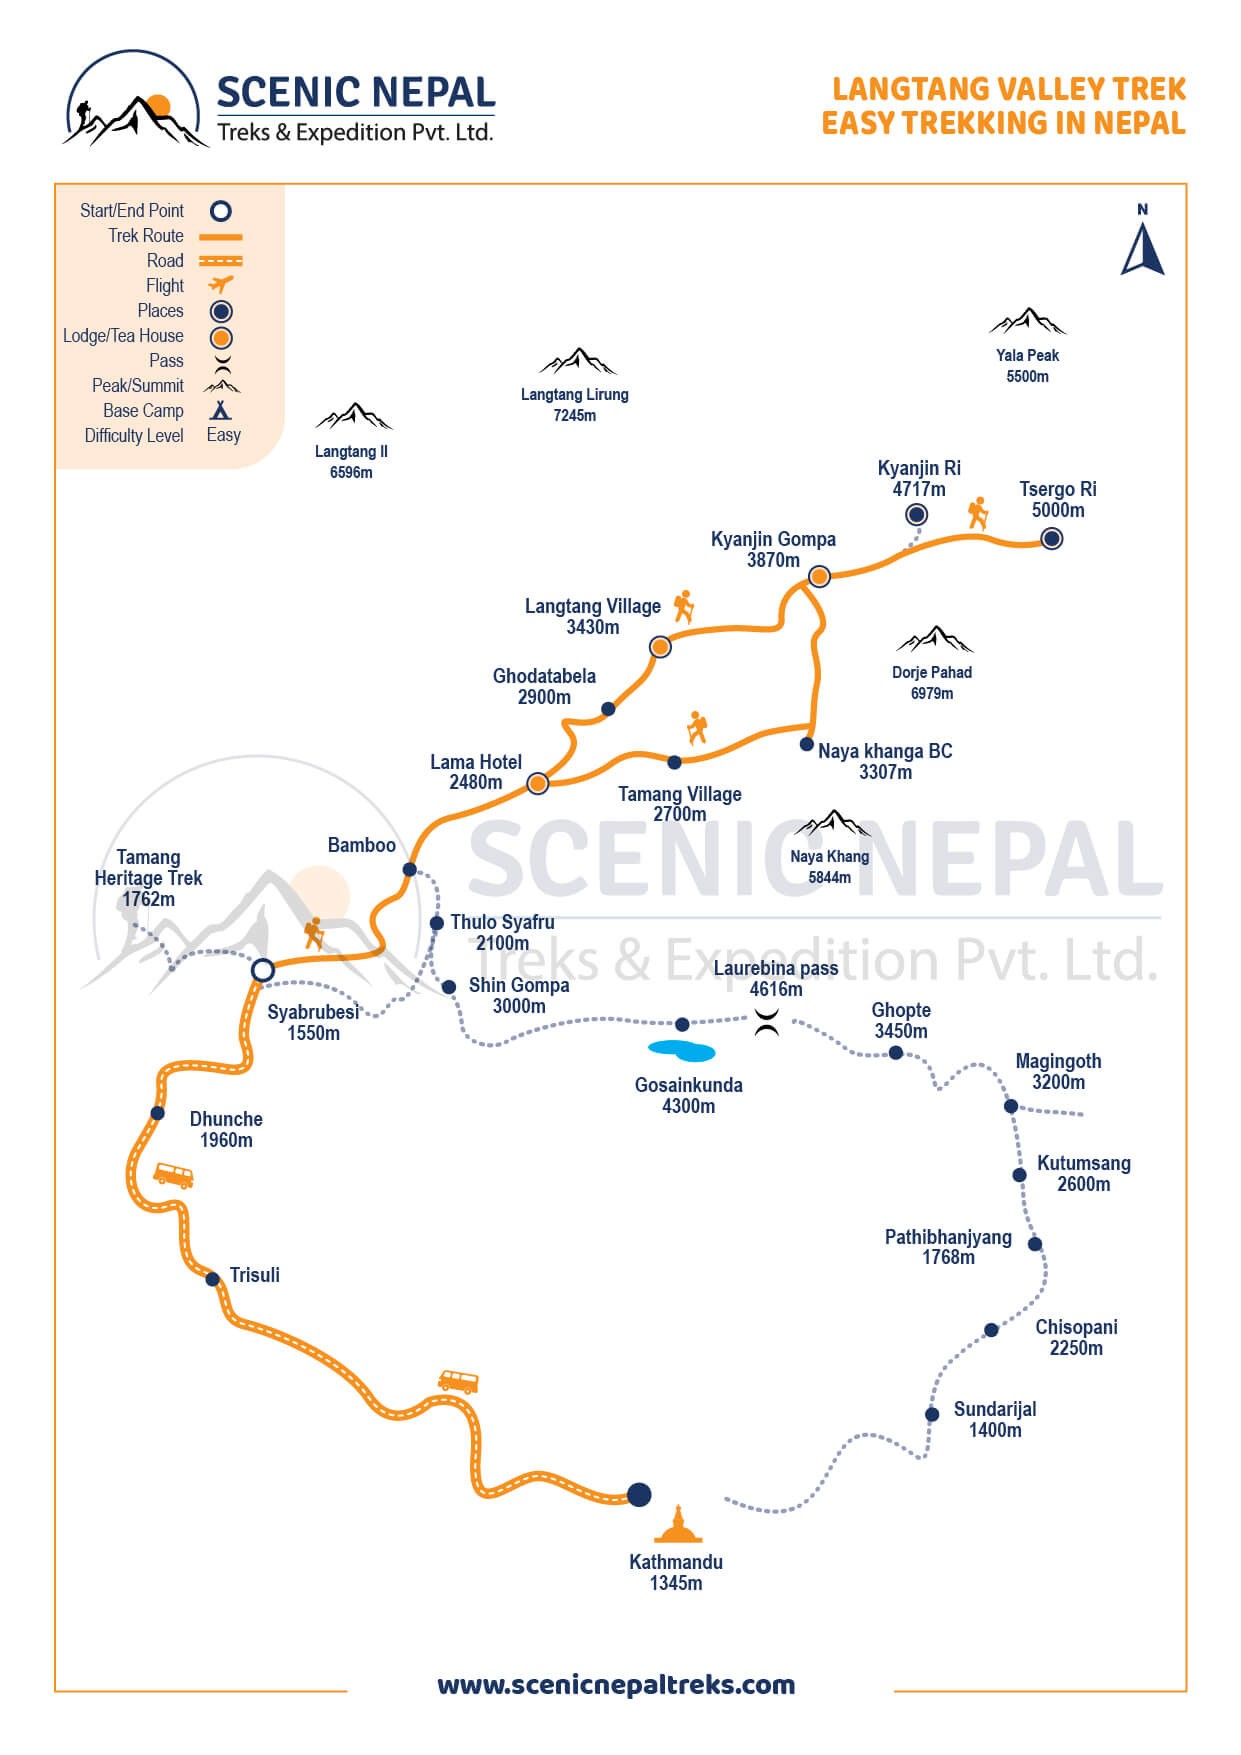 Langtang Valley Trek 9 days; Short easy Trek in Nepal